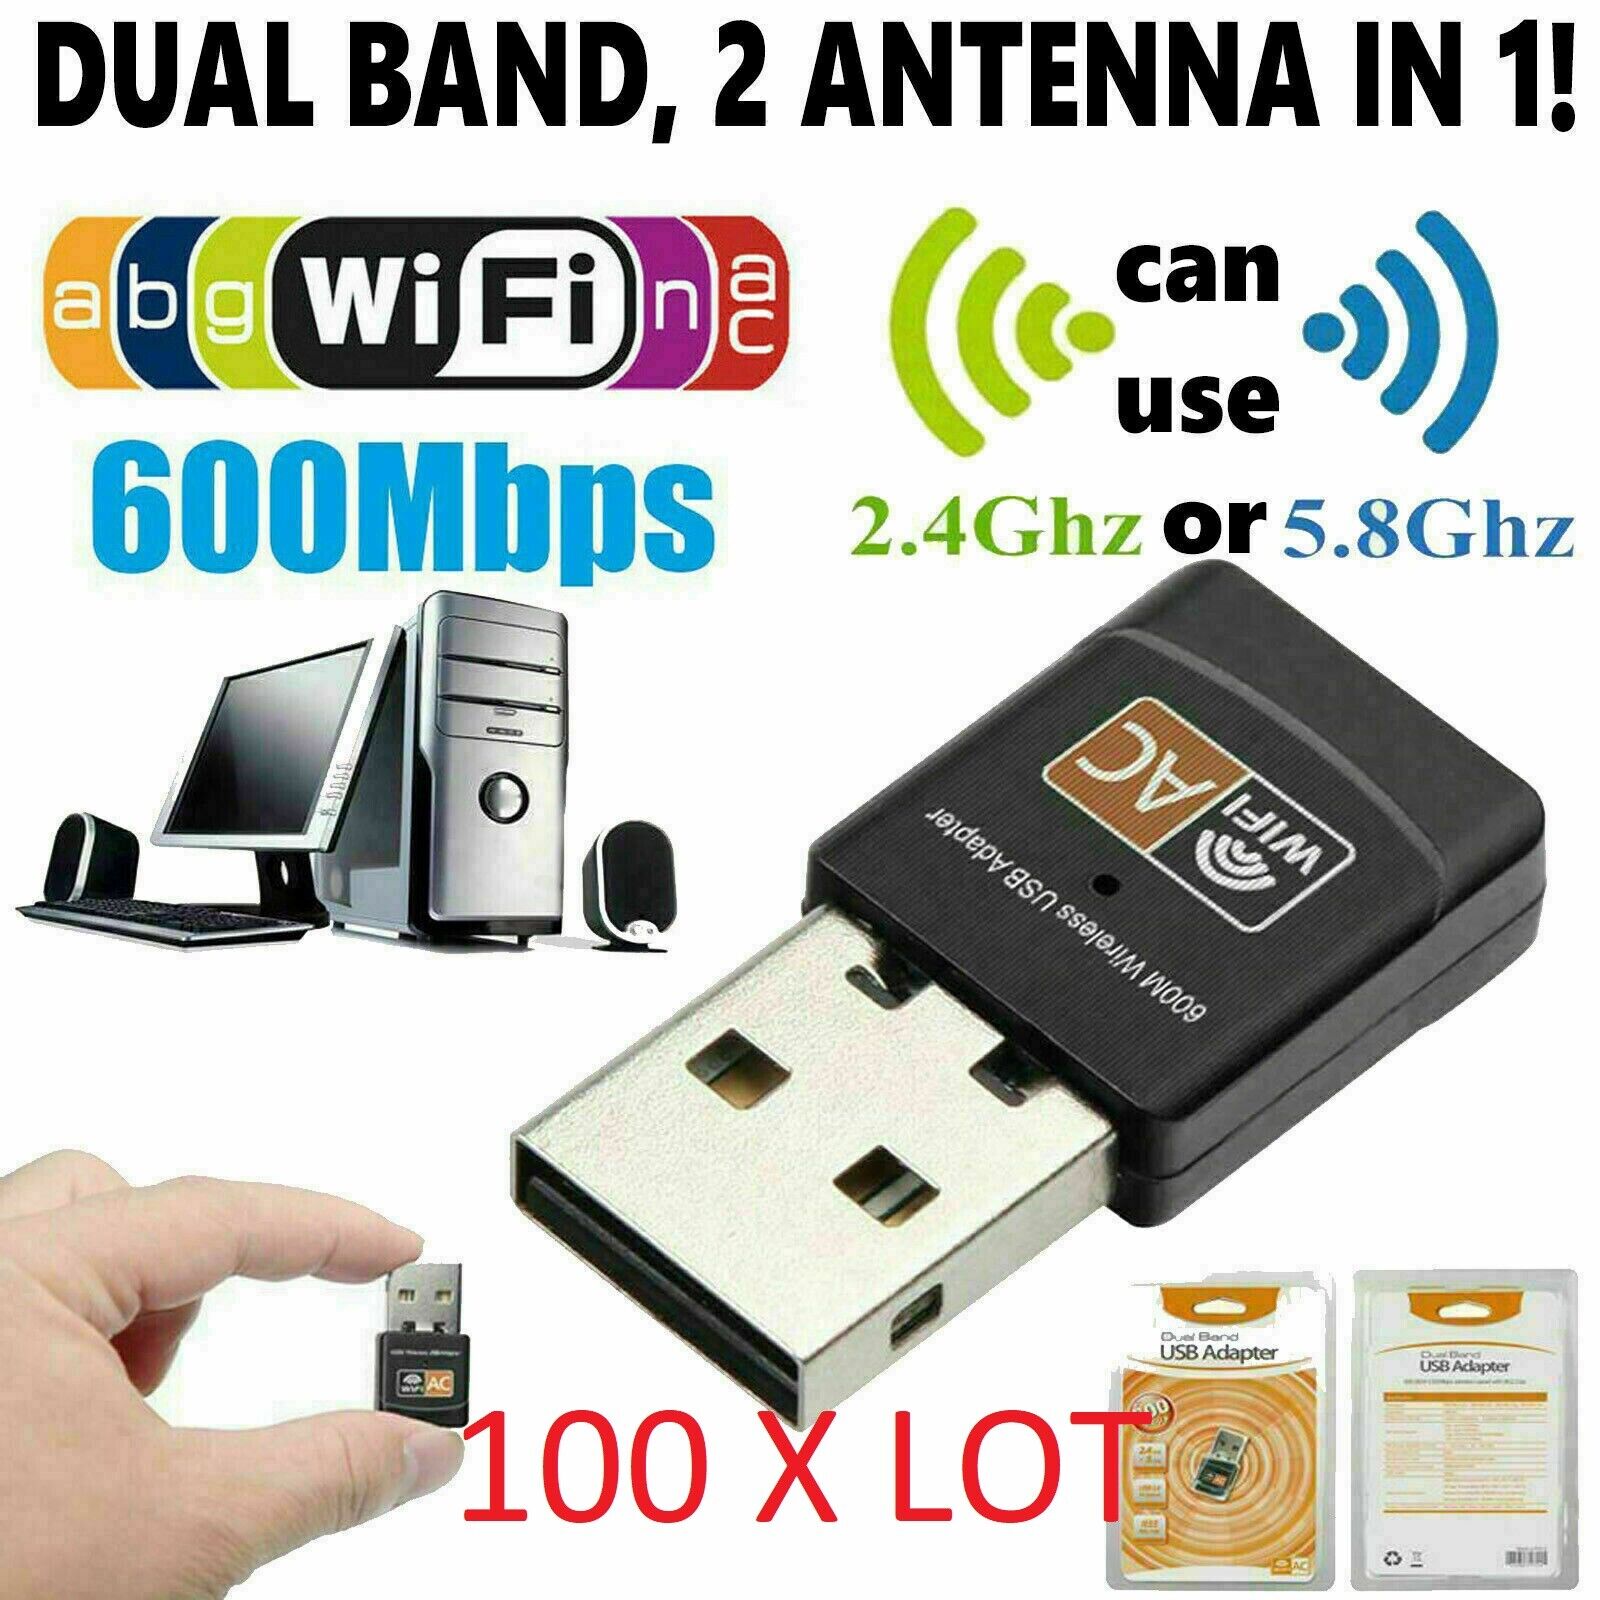 100 X LOT AC600 Mbps Dual Band 2.4/5Ghz Wireless USB Mini WiFi Network 802.11